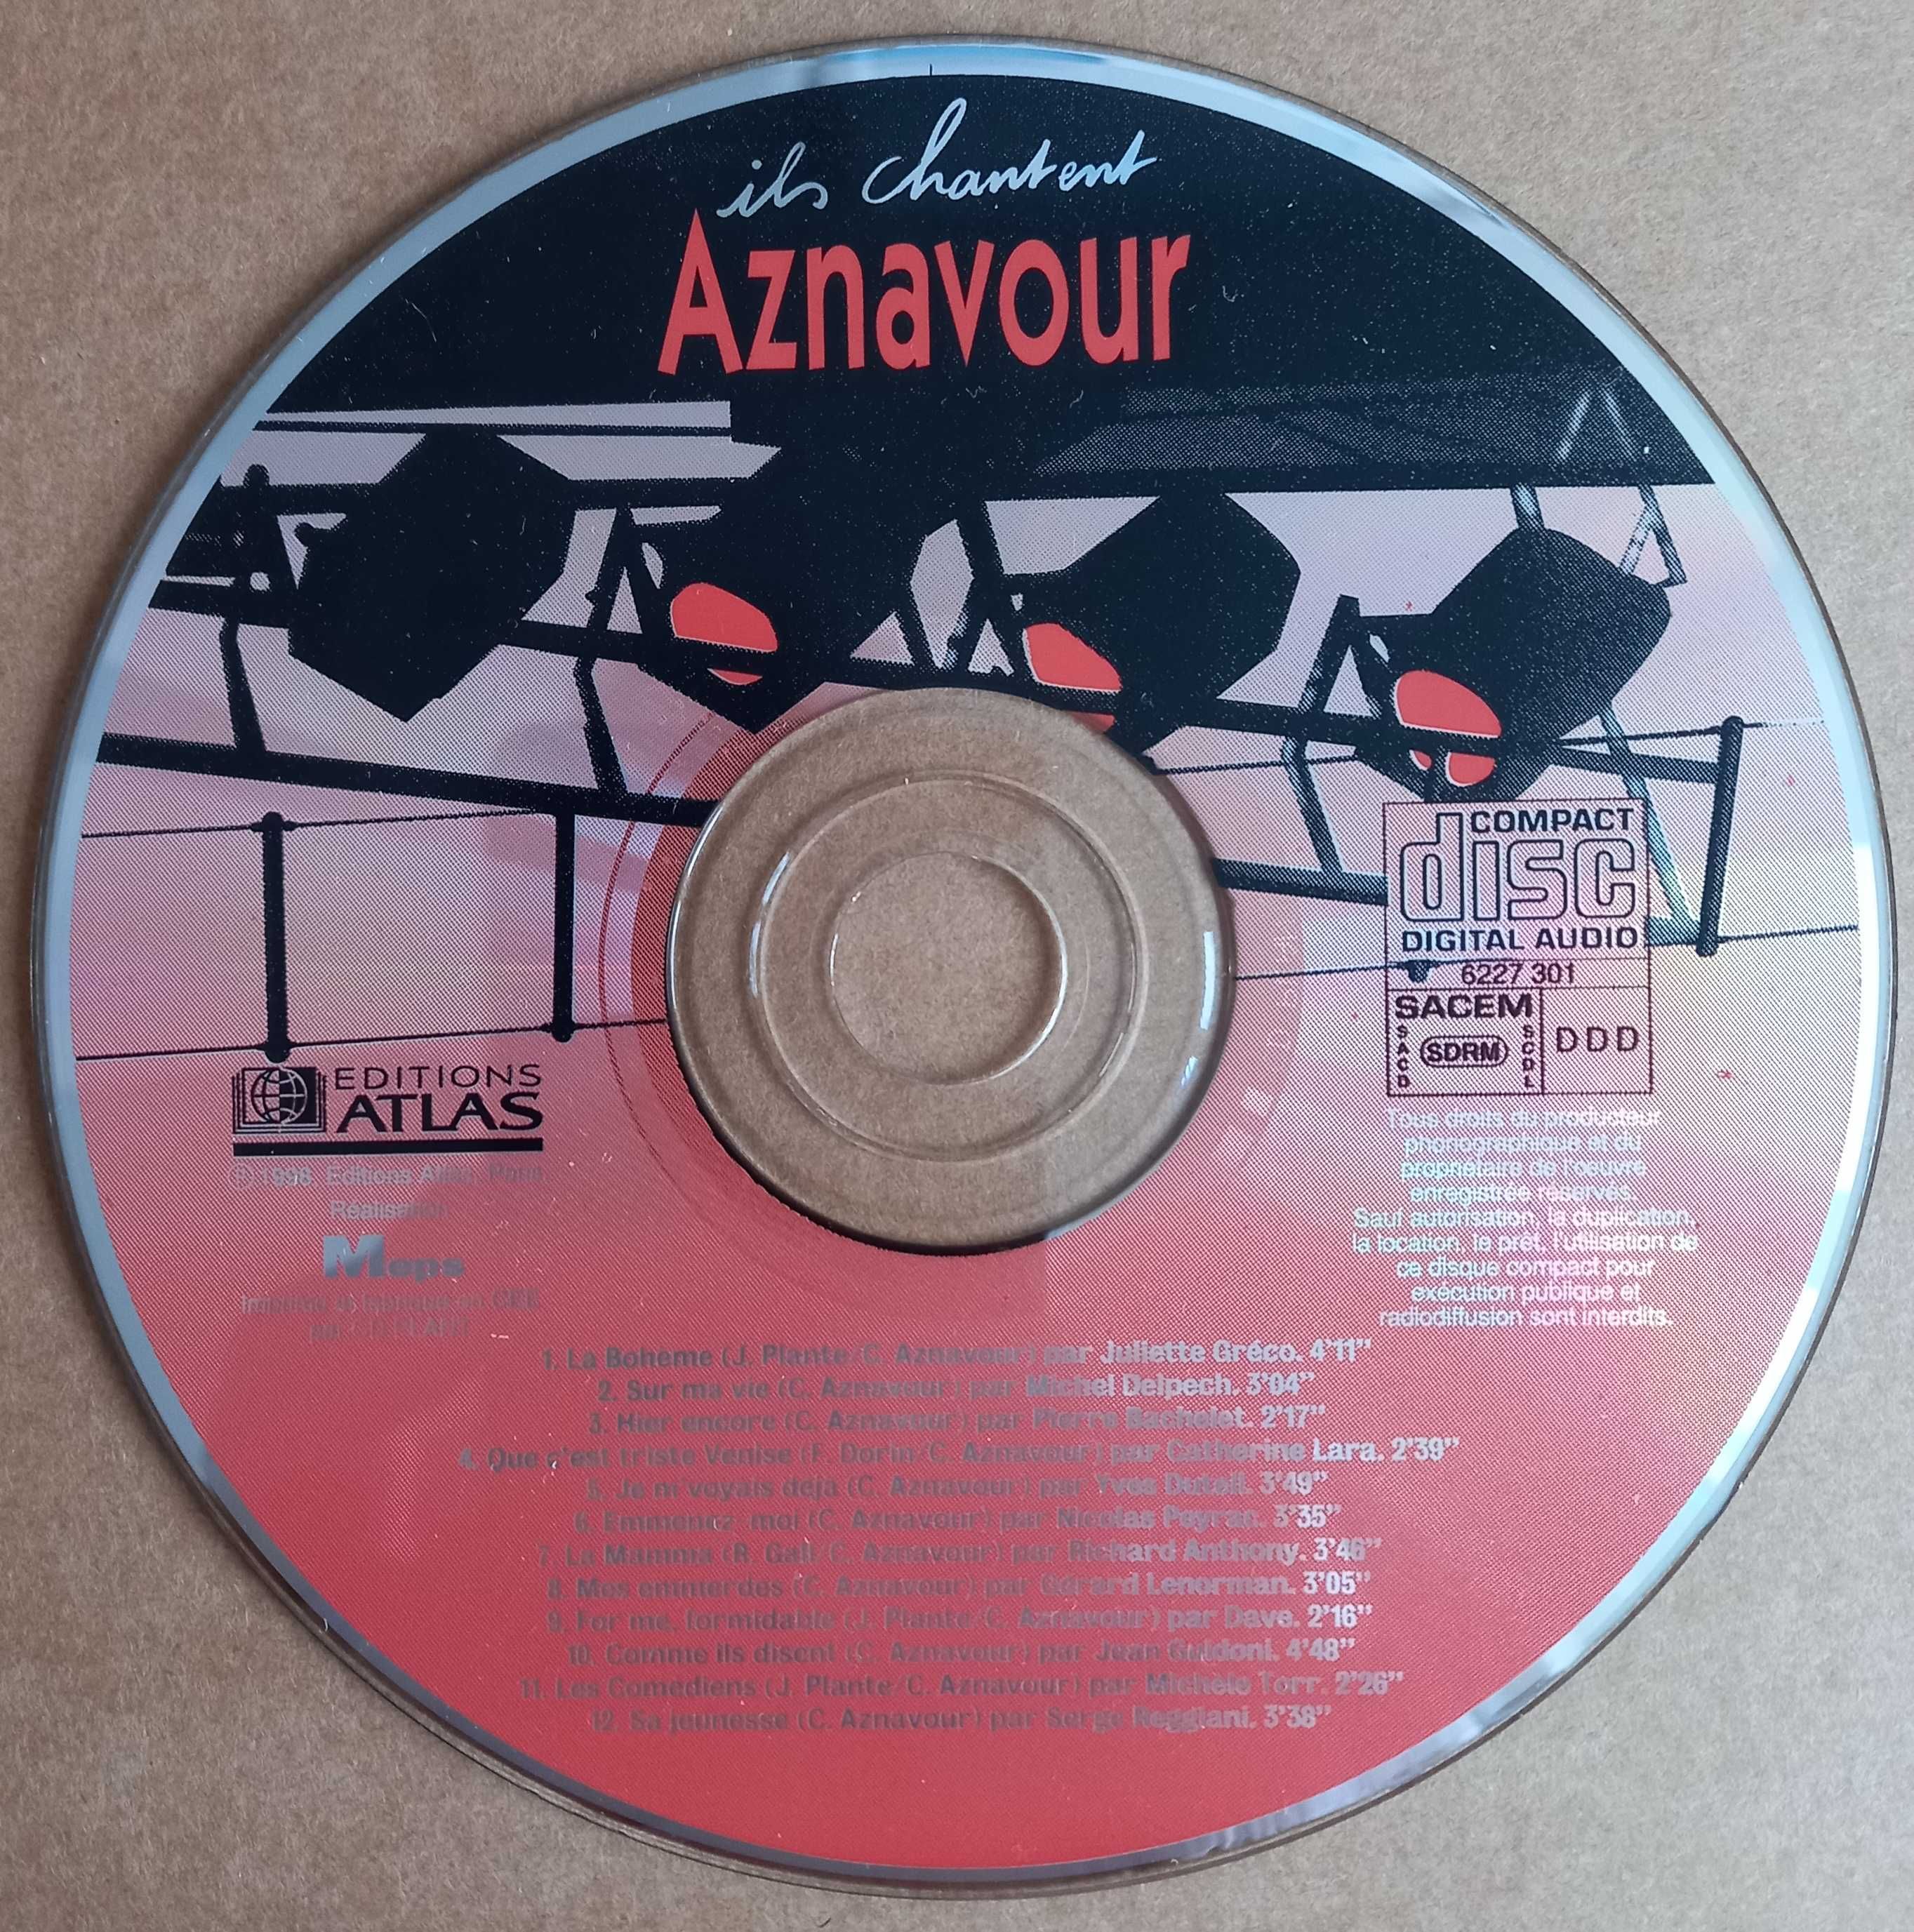 CD compilation "Ils chantent Aznavour", France, 1998 год